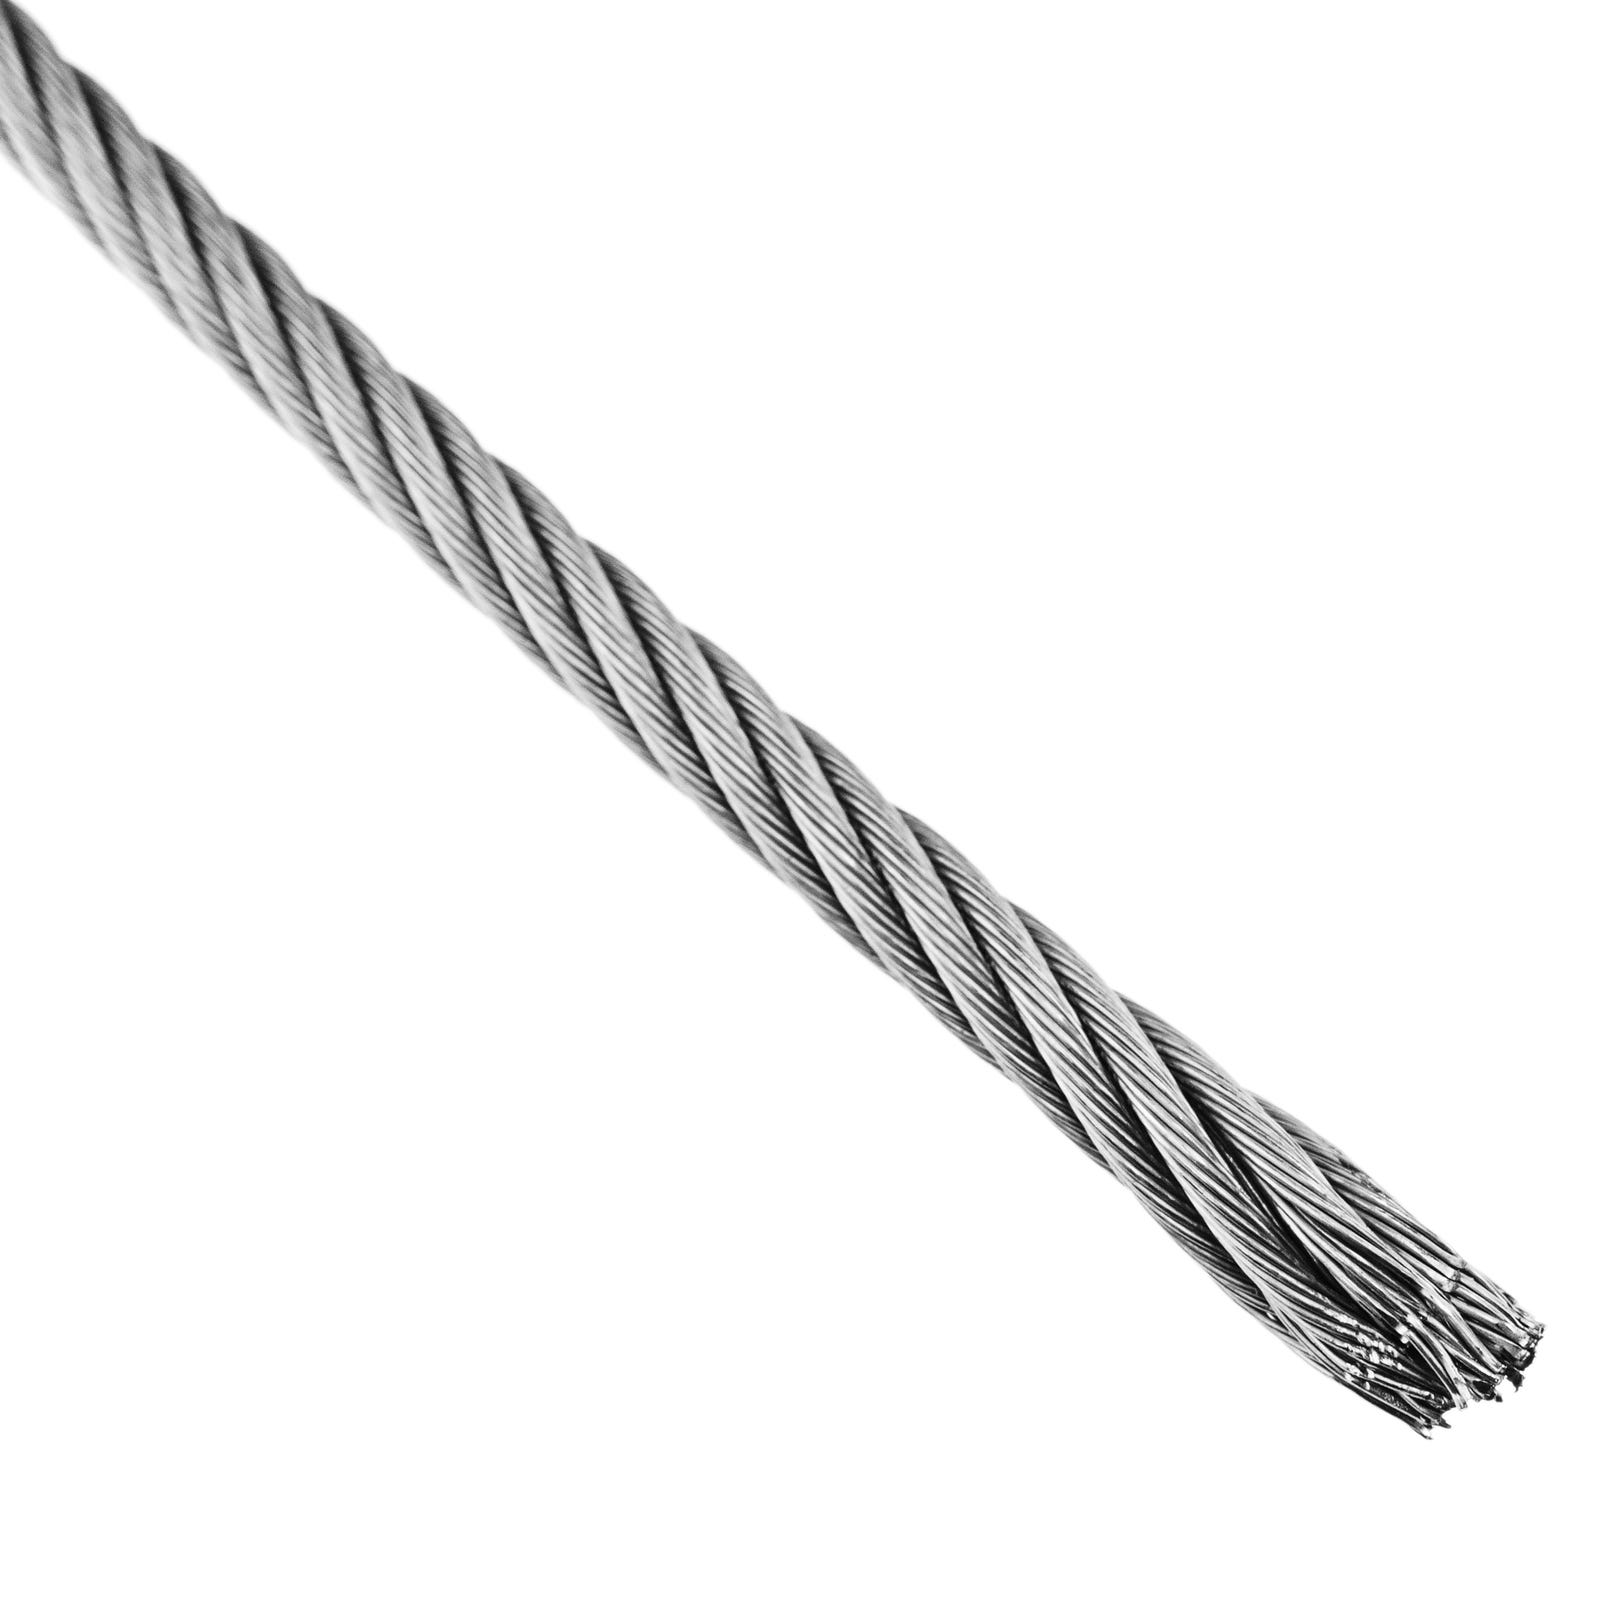 Câble métallique souple en acier inoxydable 100, longueur 50m/304